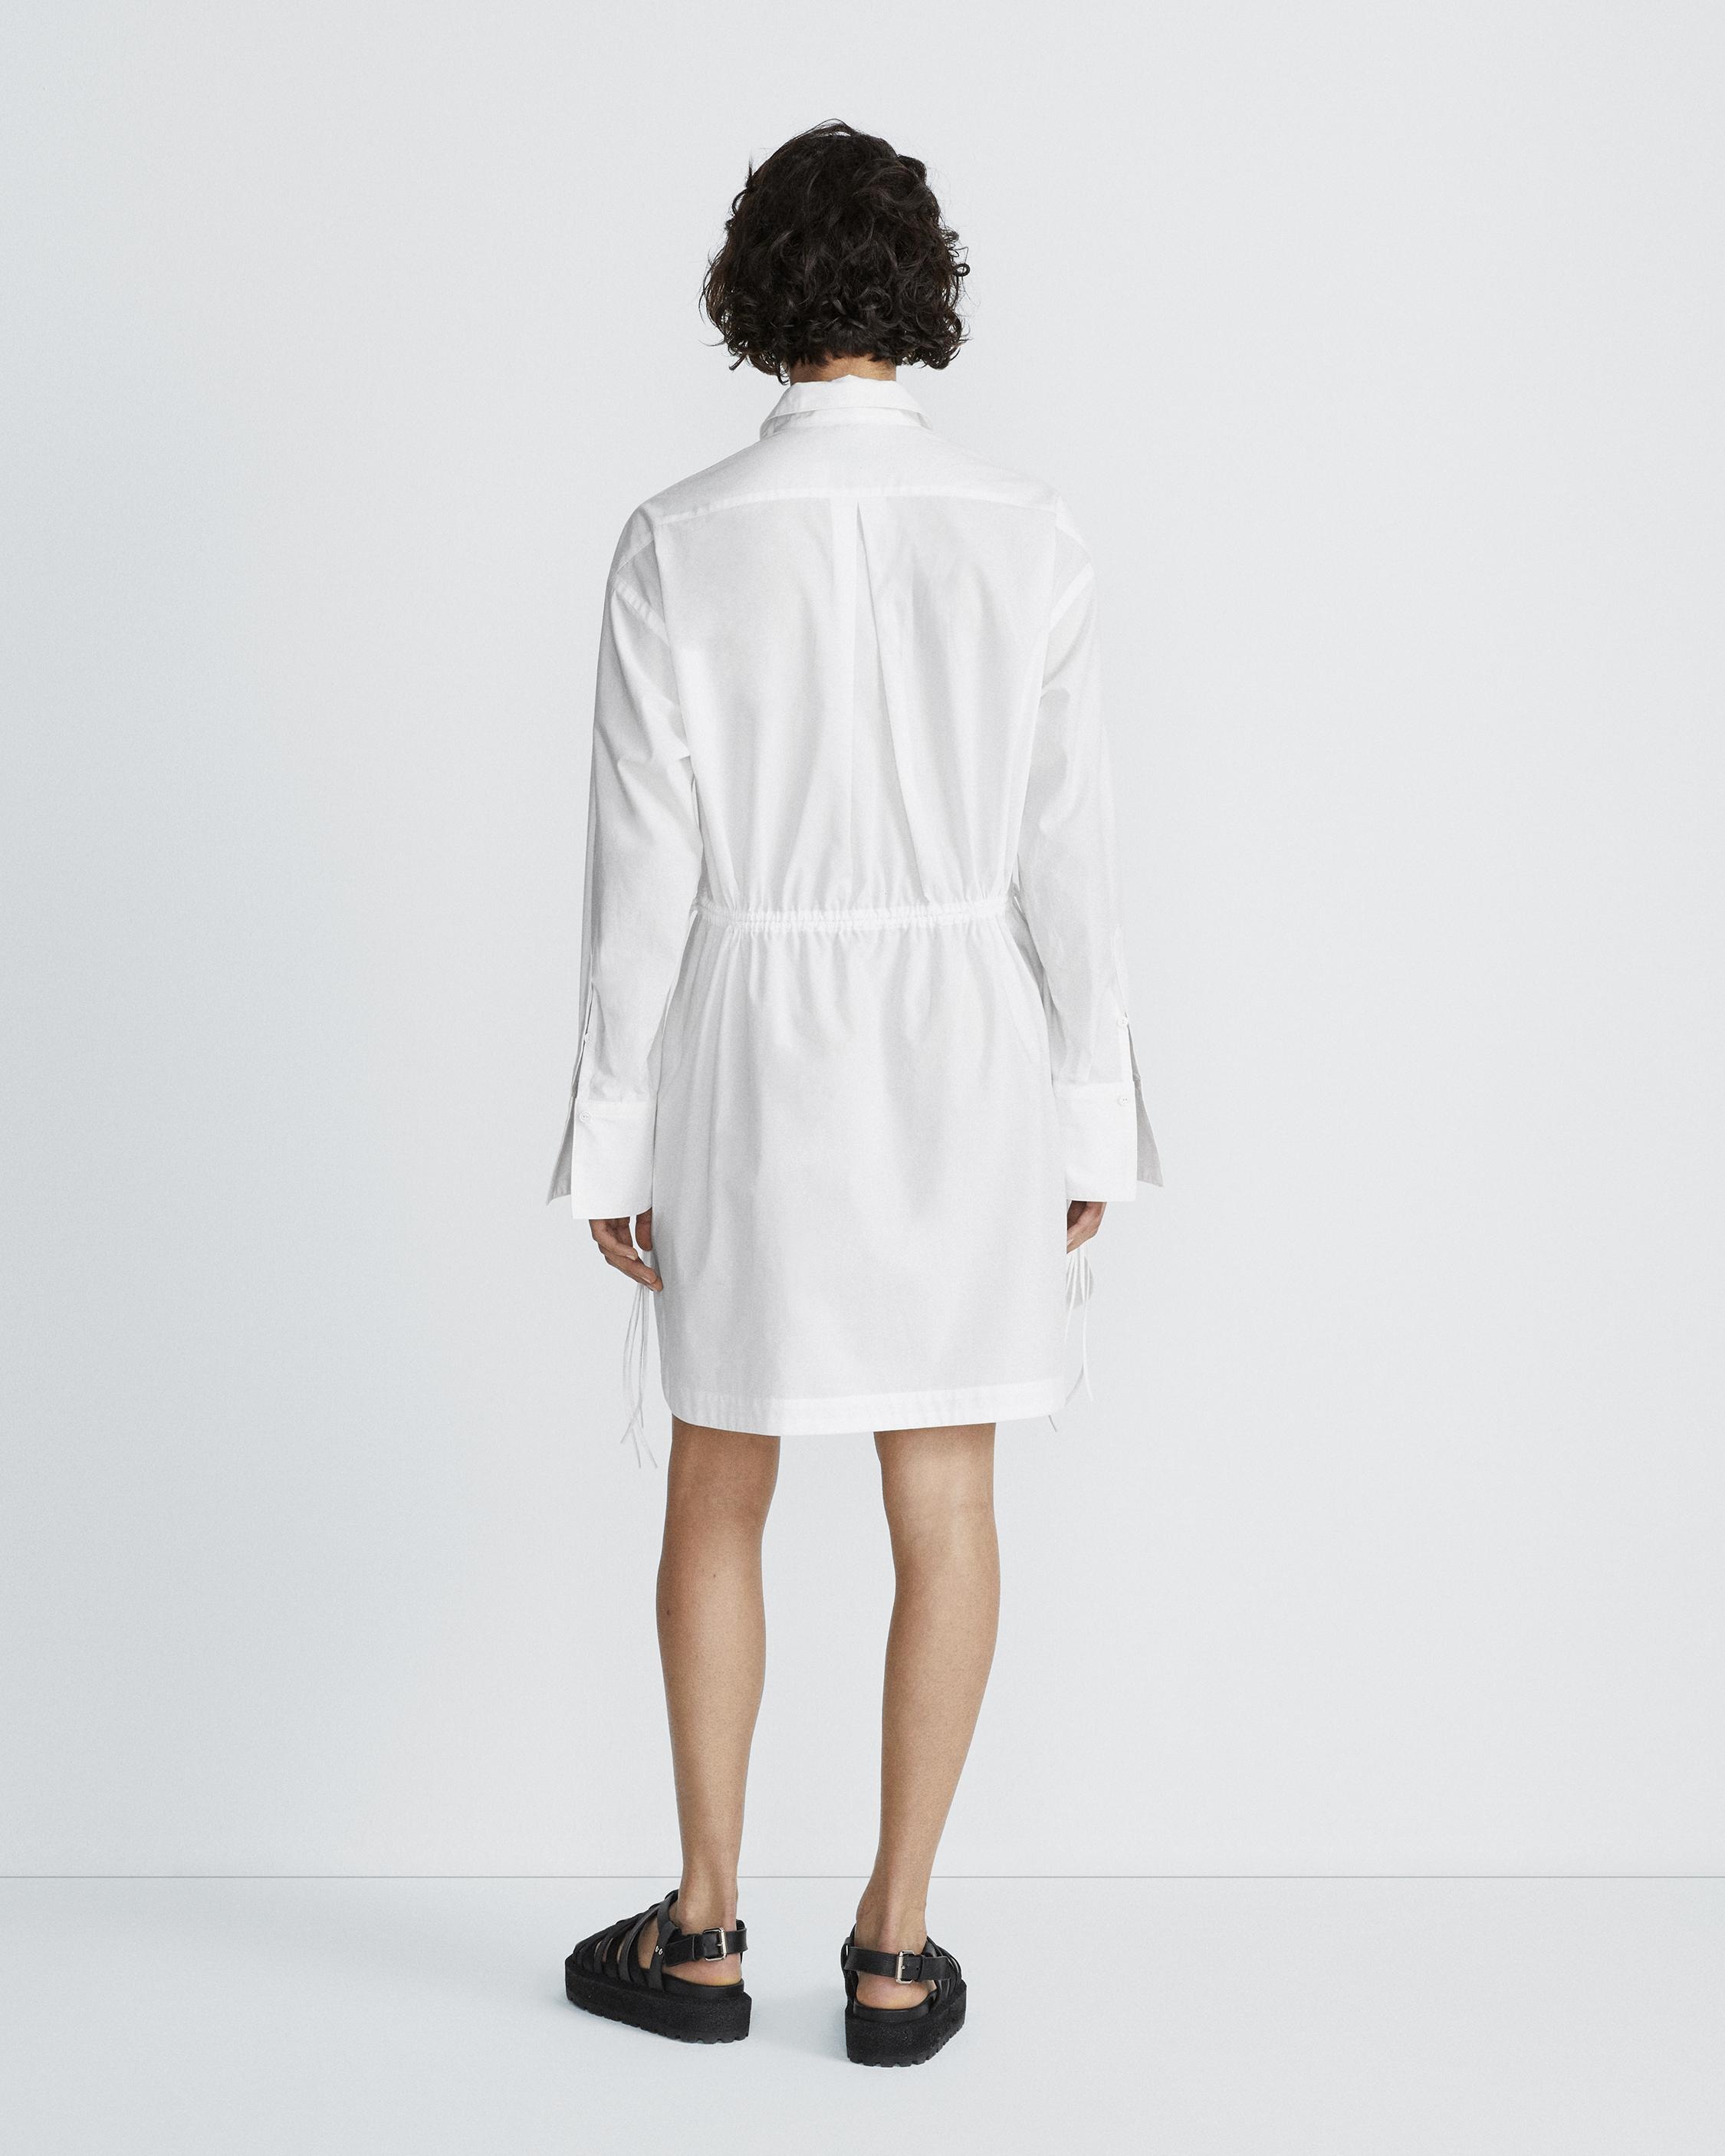 Fiona Mini Shirt Dress
Cotton Poplin Dress - 5